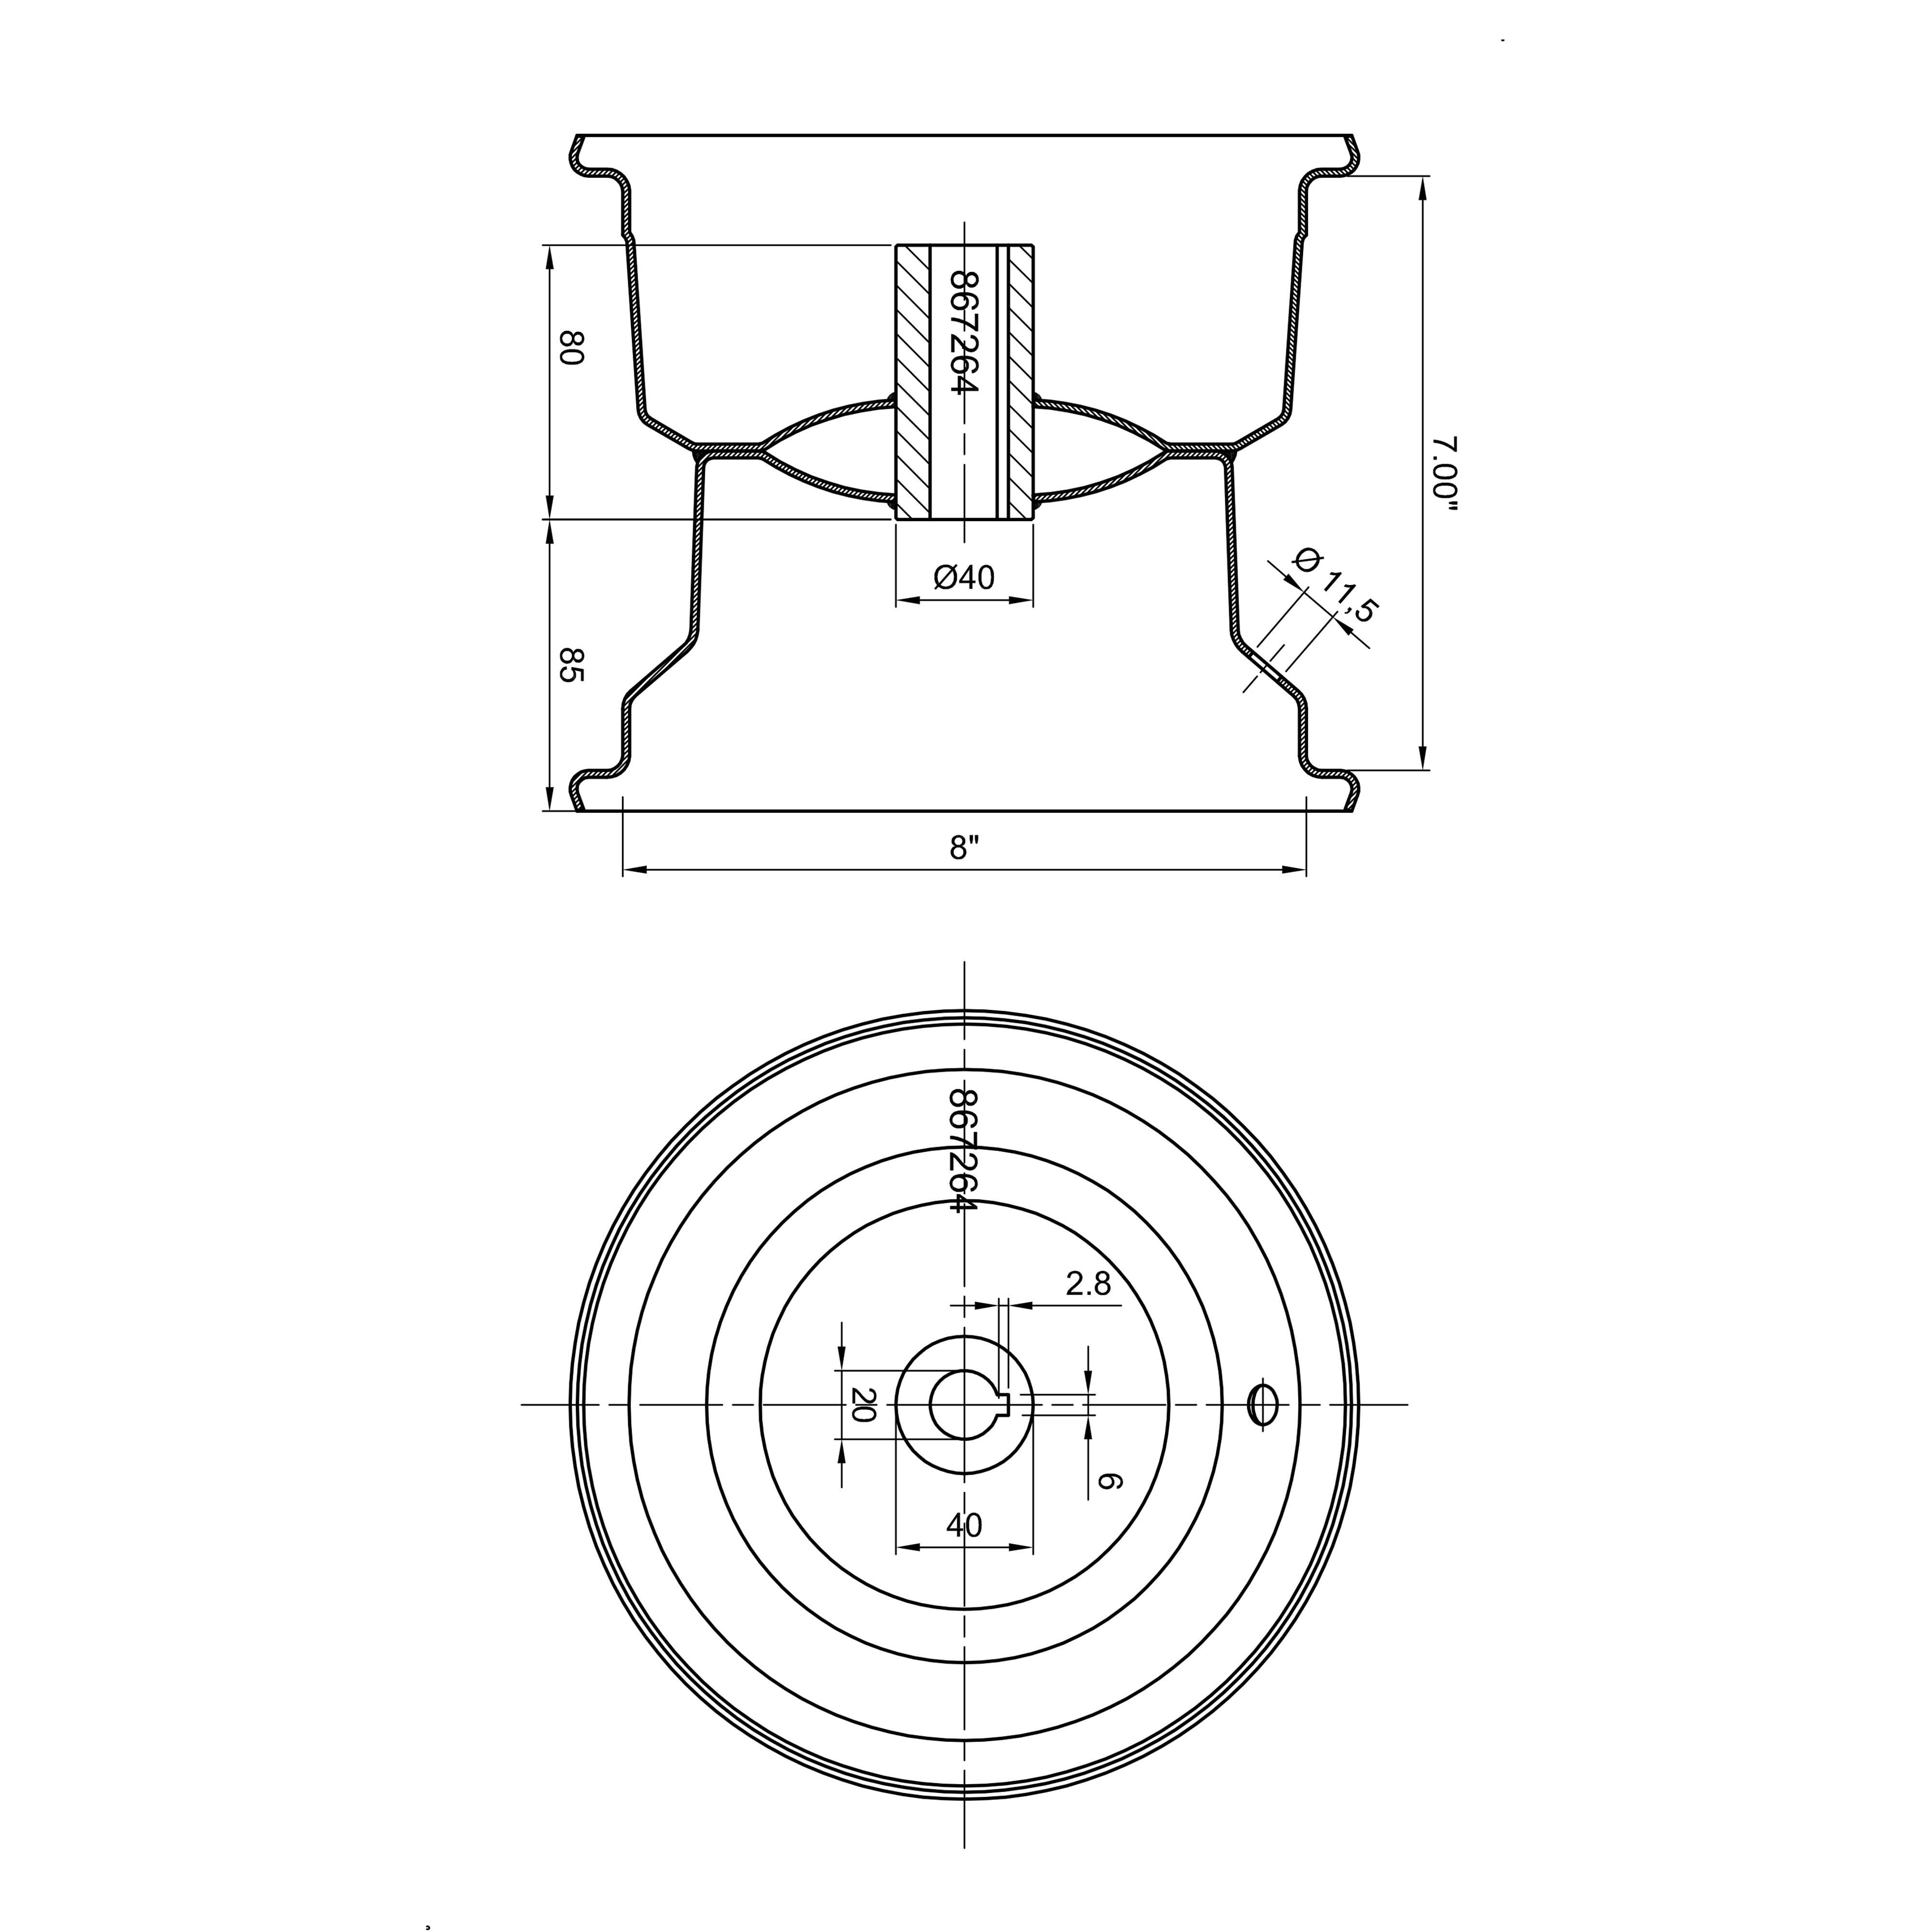 Felgenskizze - Rasentraktor Rad 230/60-8, 4PR,Kenda K358, Achs-Ø: 20mm, Keilnut: 6mm